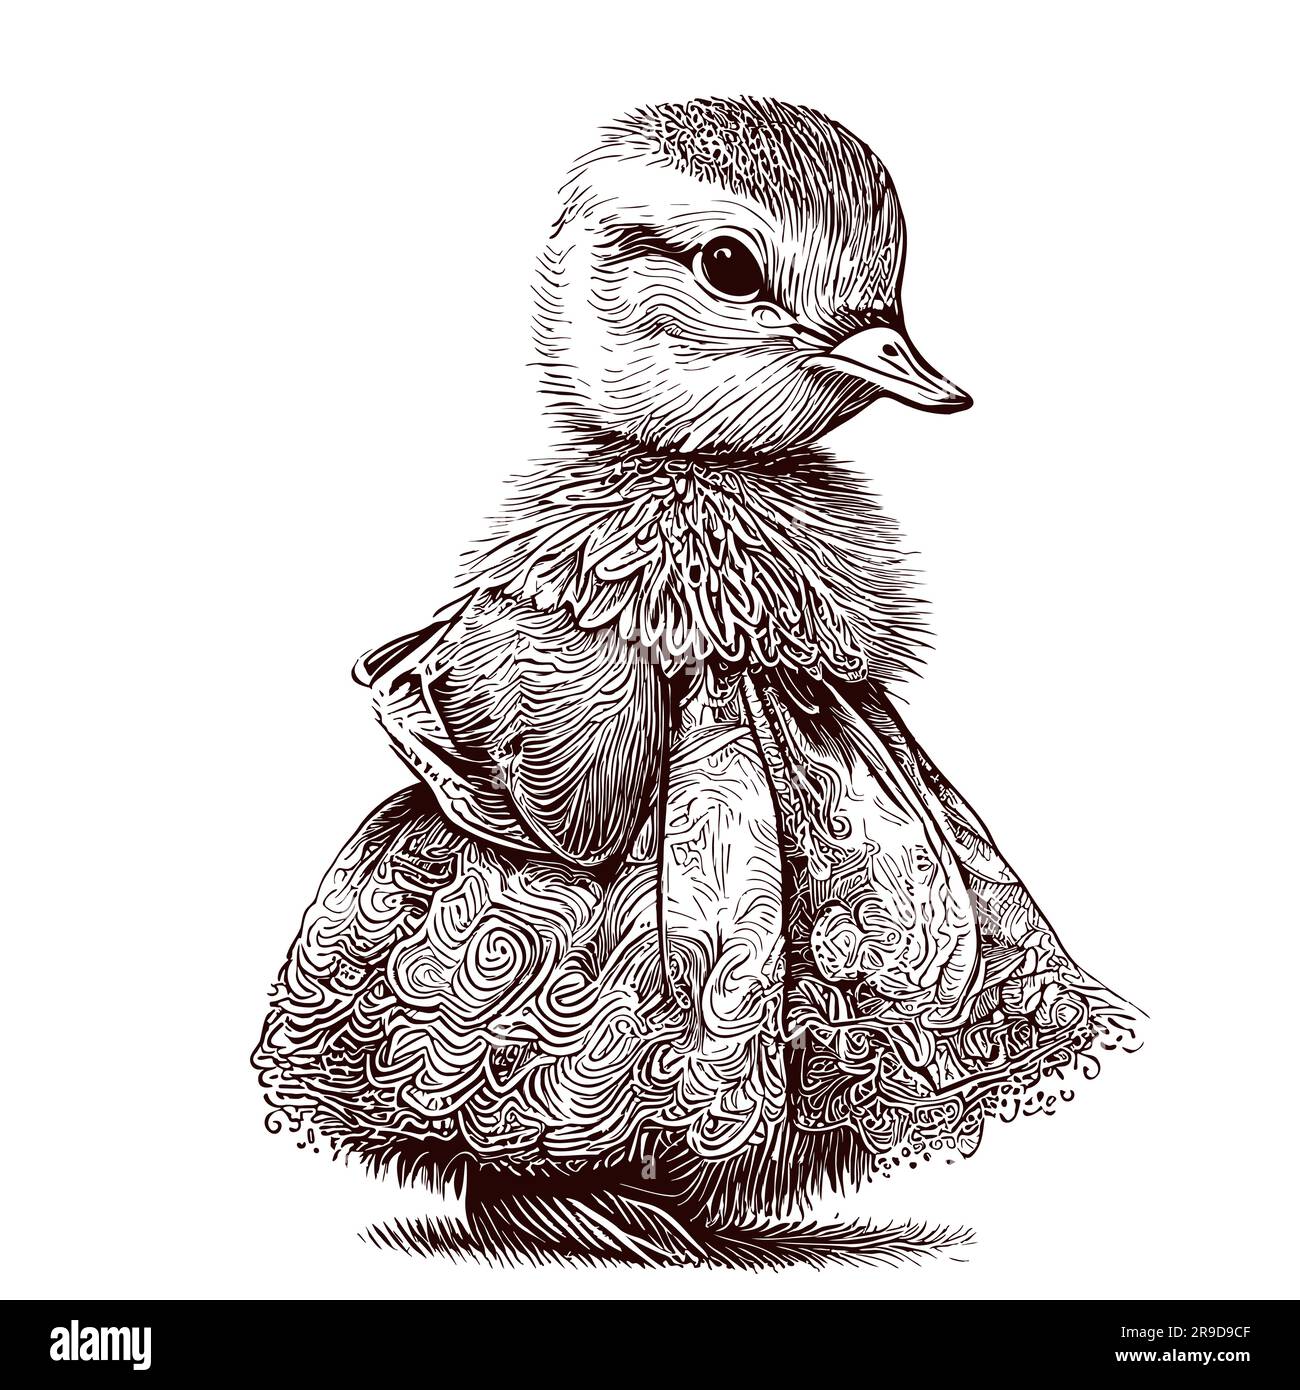 Sketch a newborn duckling Royalty Free Vector Image